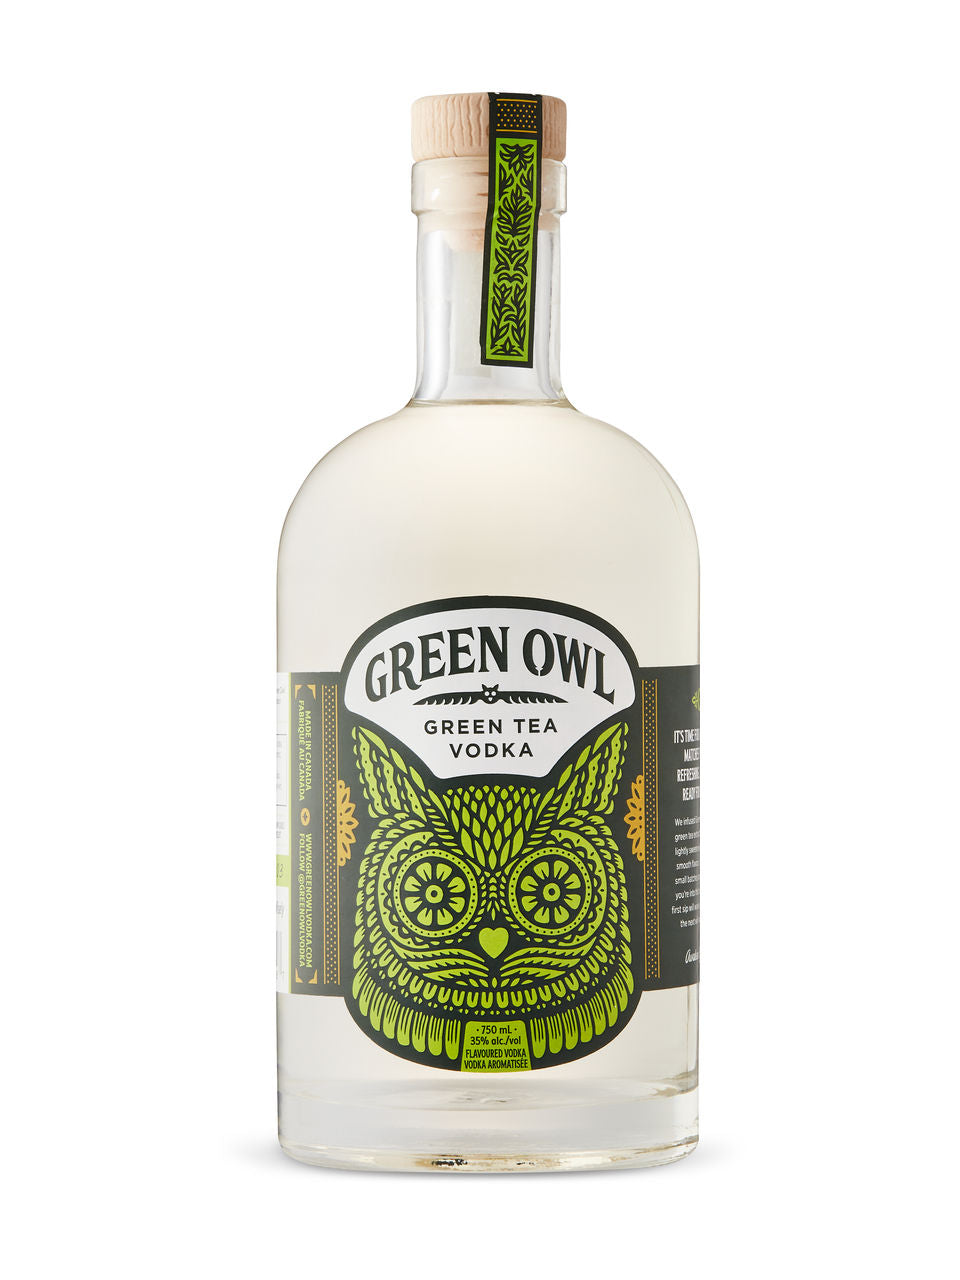 Green Owl Vodka 750 ml bottle